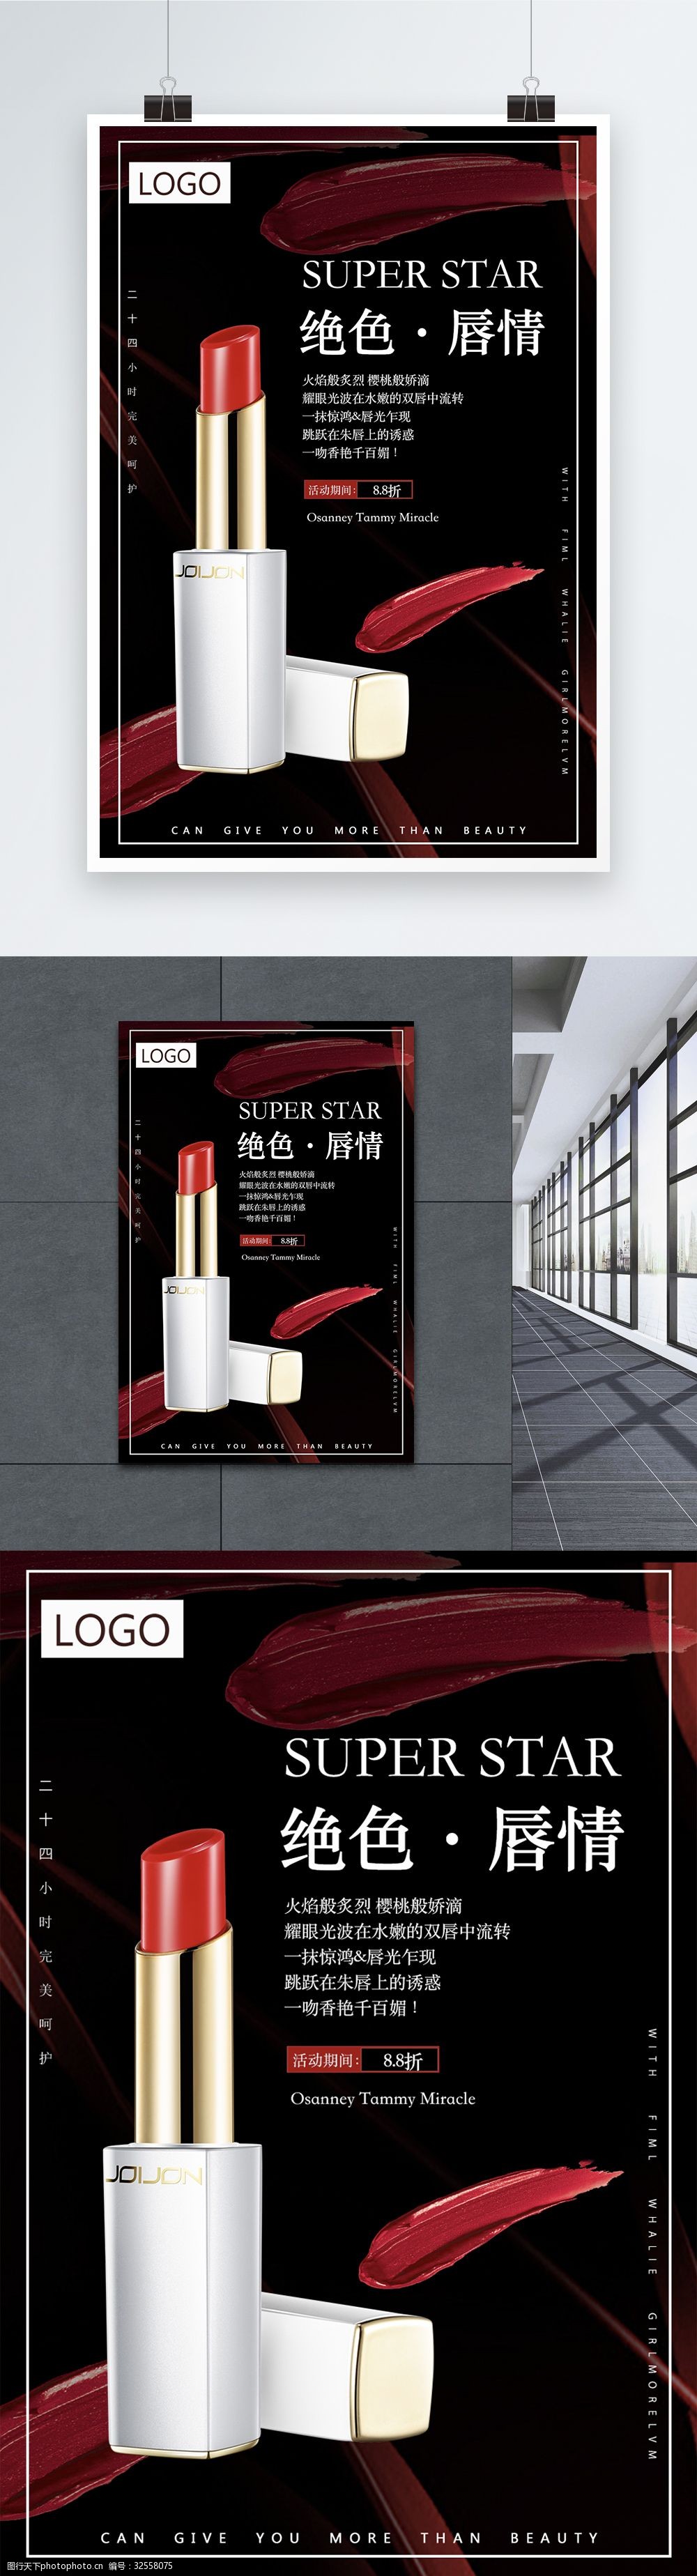 关键词:大气口红海报 口红 海报 化妆品 口红促销 促销海报 海报设计